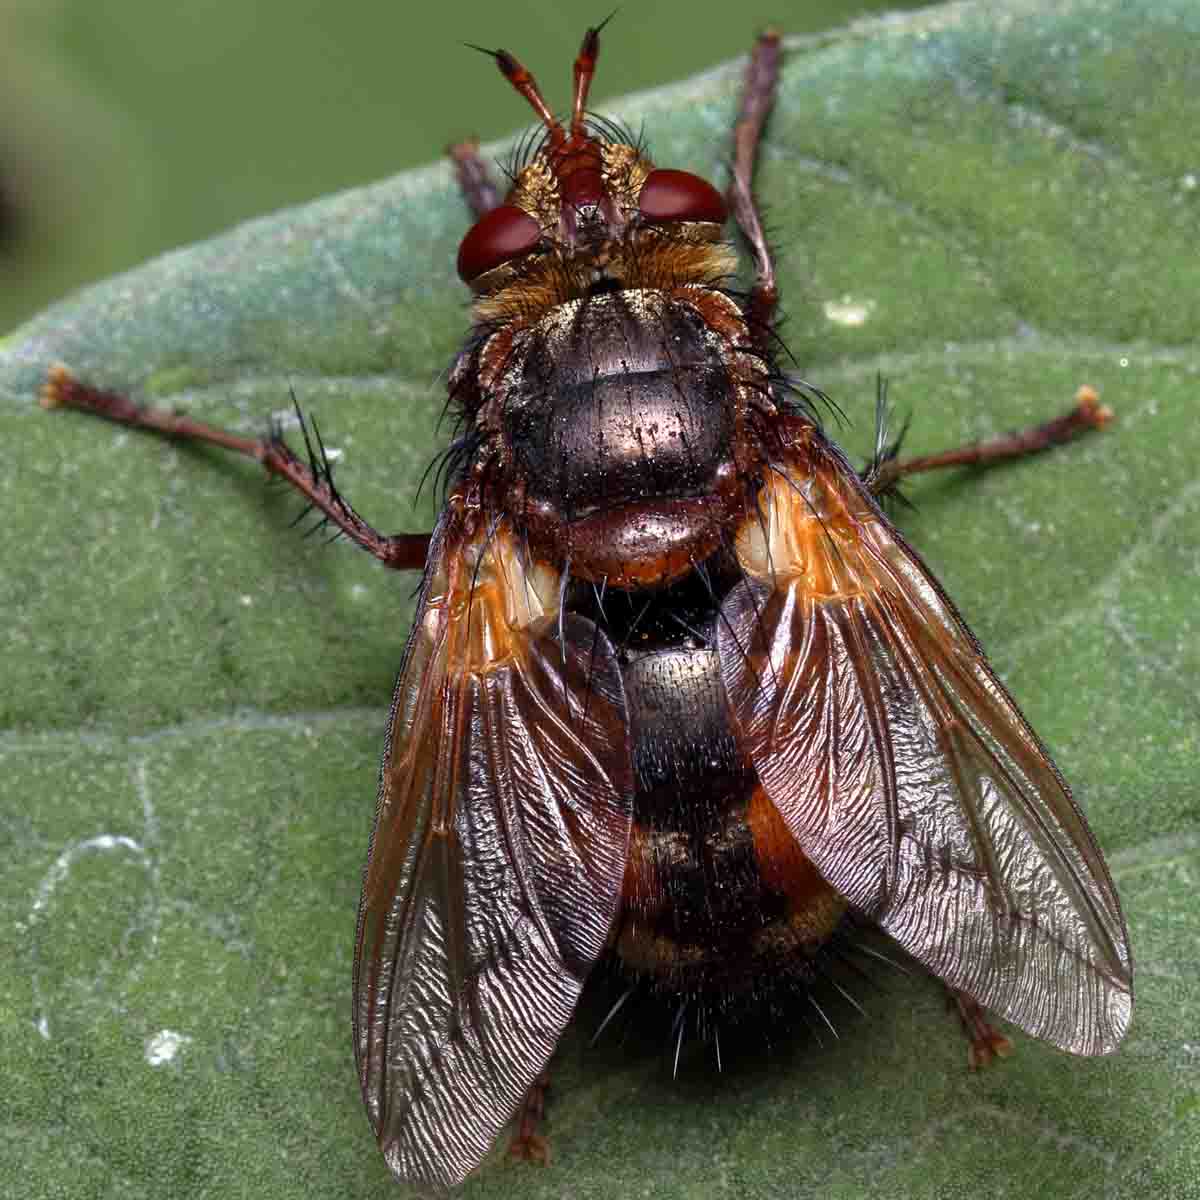 A tachinid fly on leaf